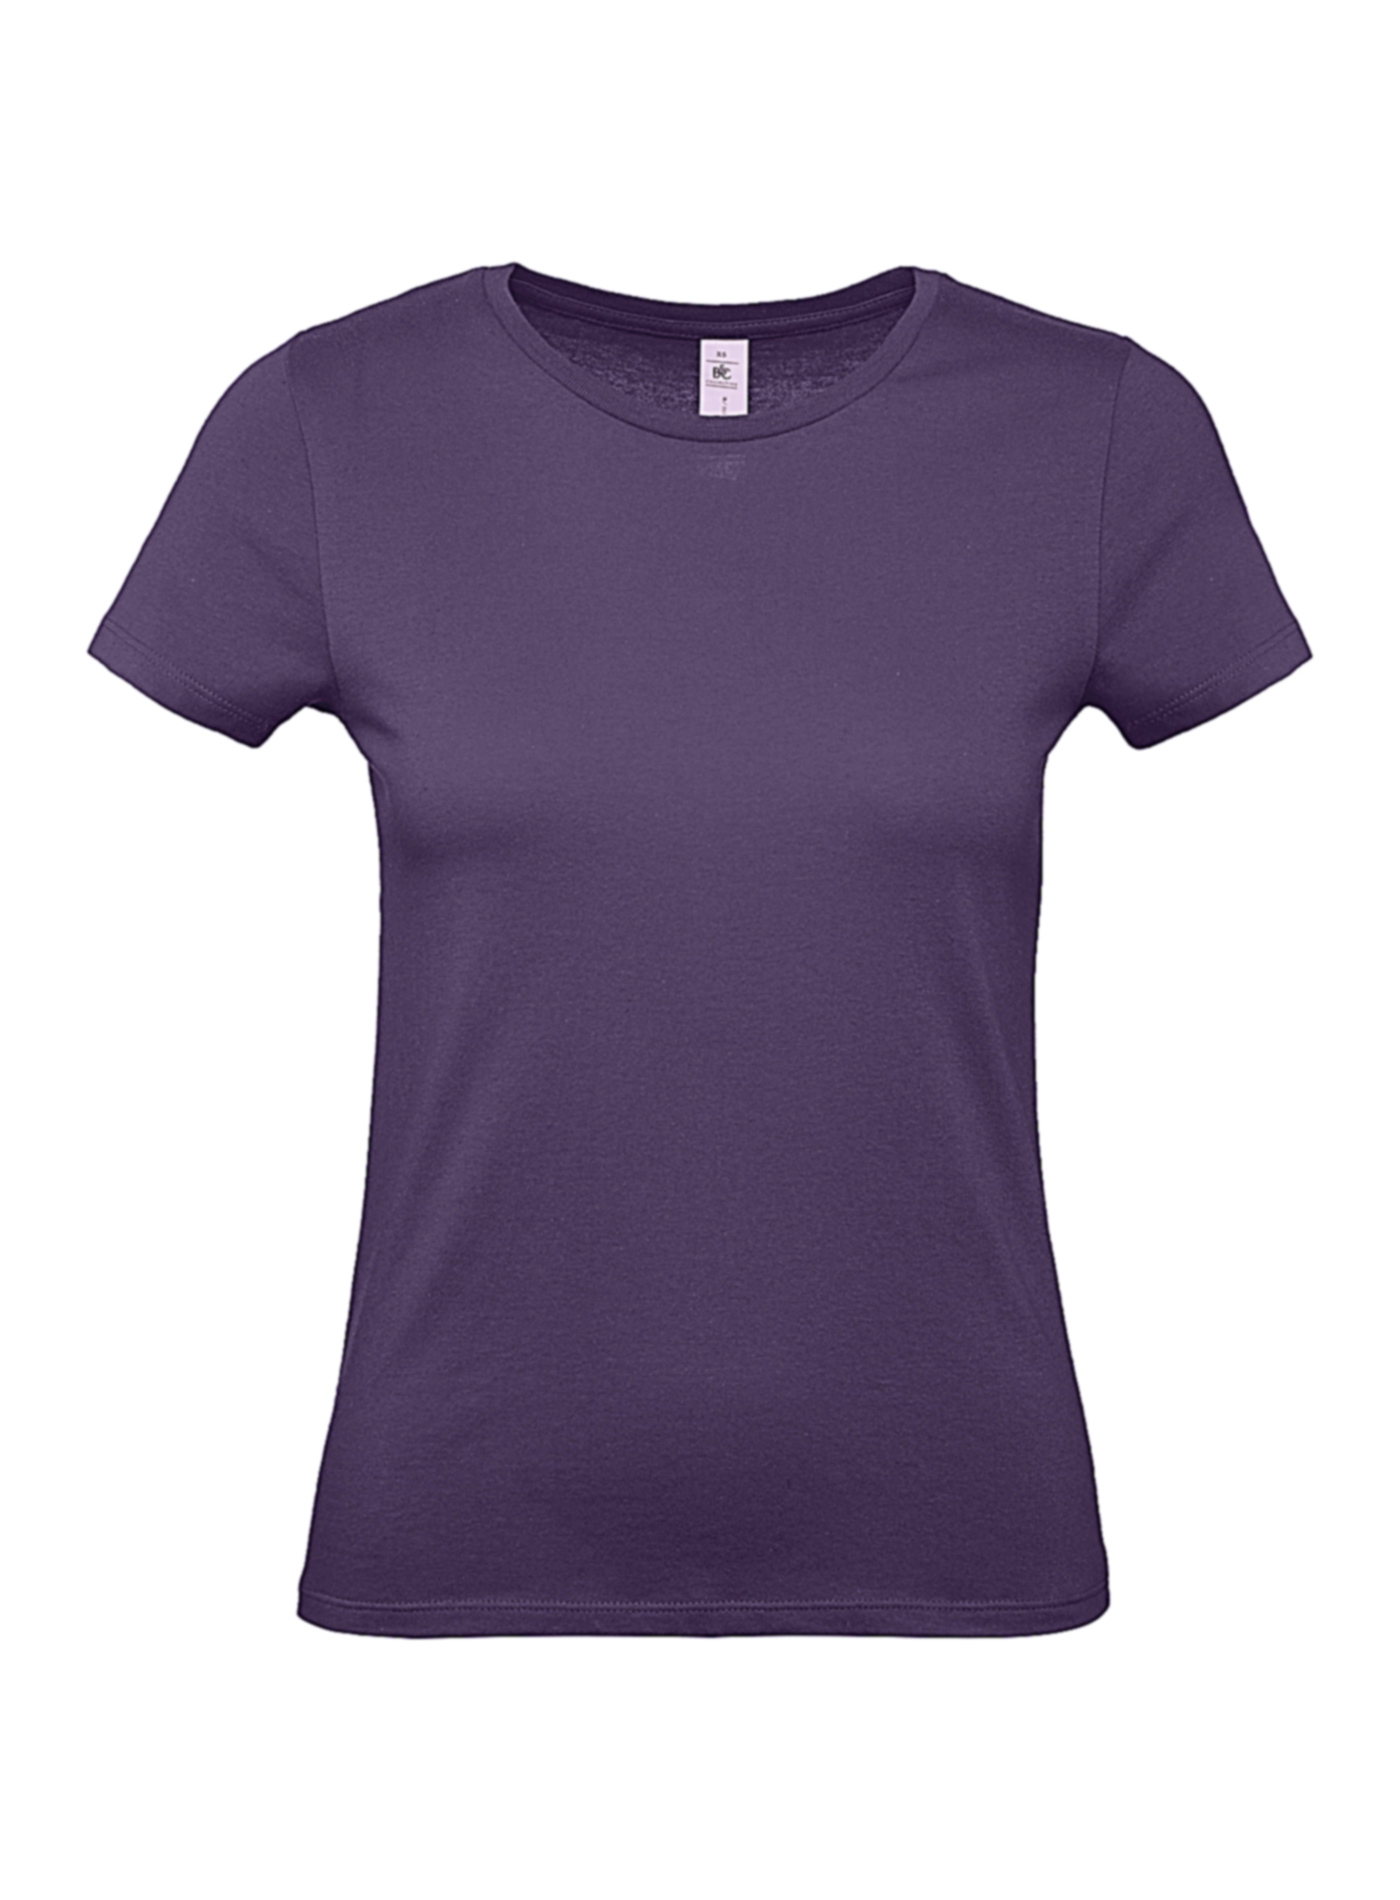 Dámské tričko B&C - Tmavě fialová M